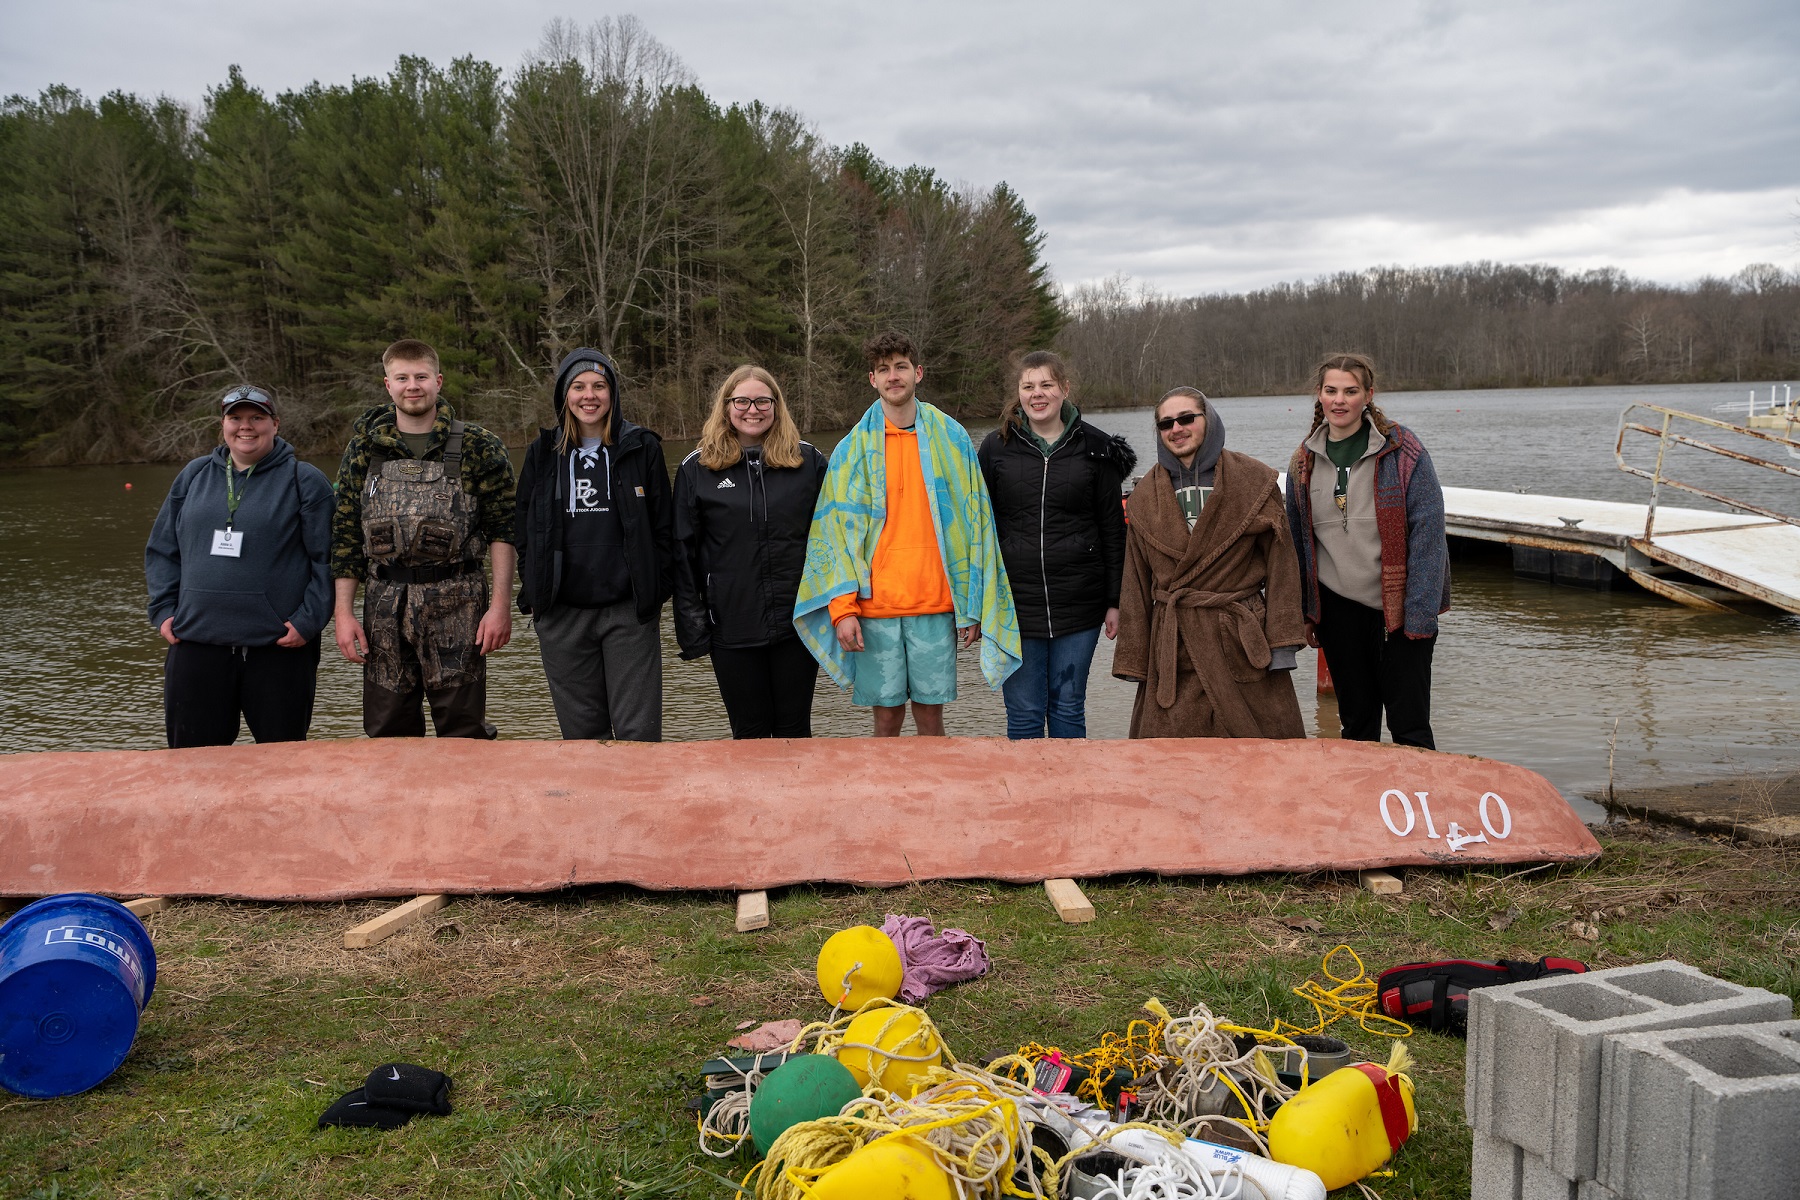 The Ohio University Concrete Canoe Team